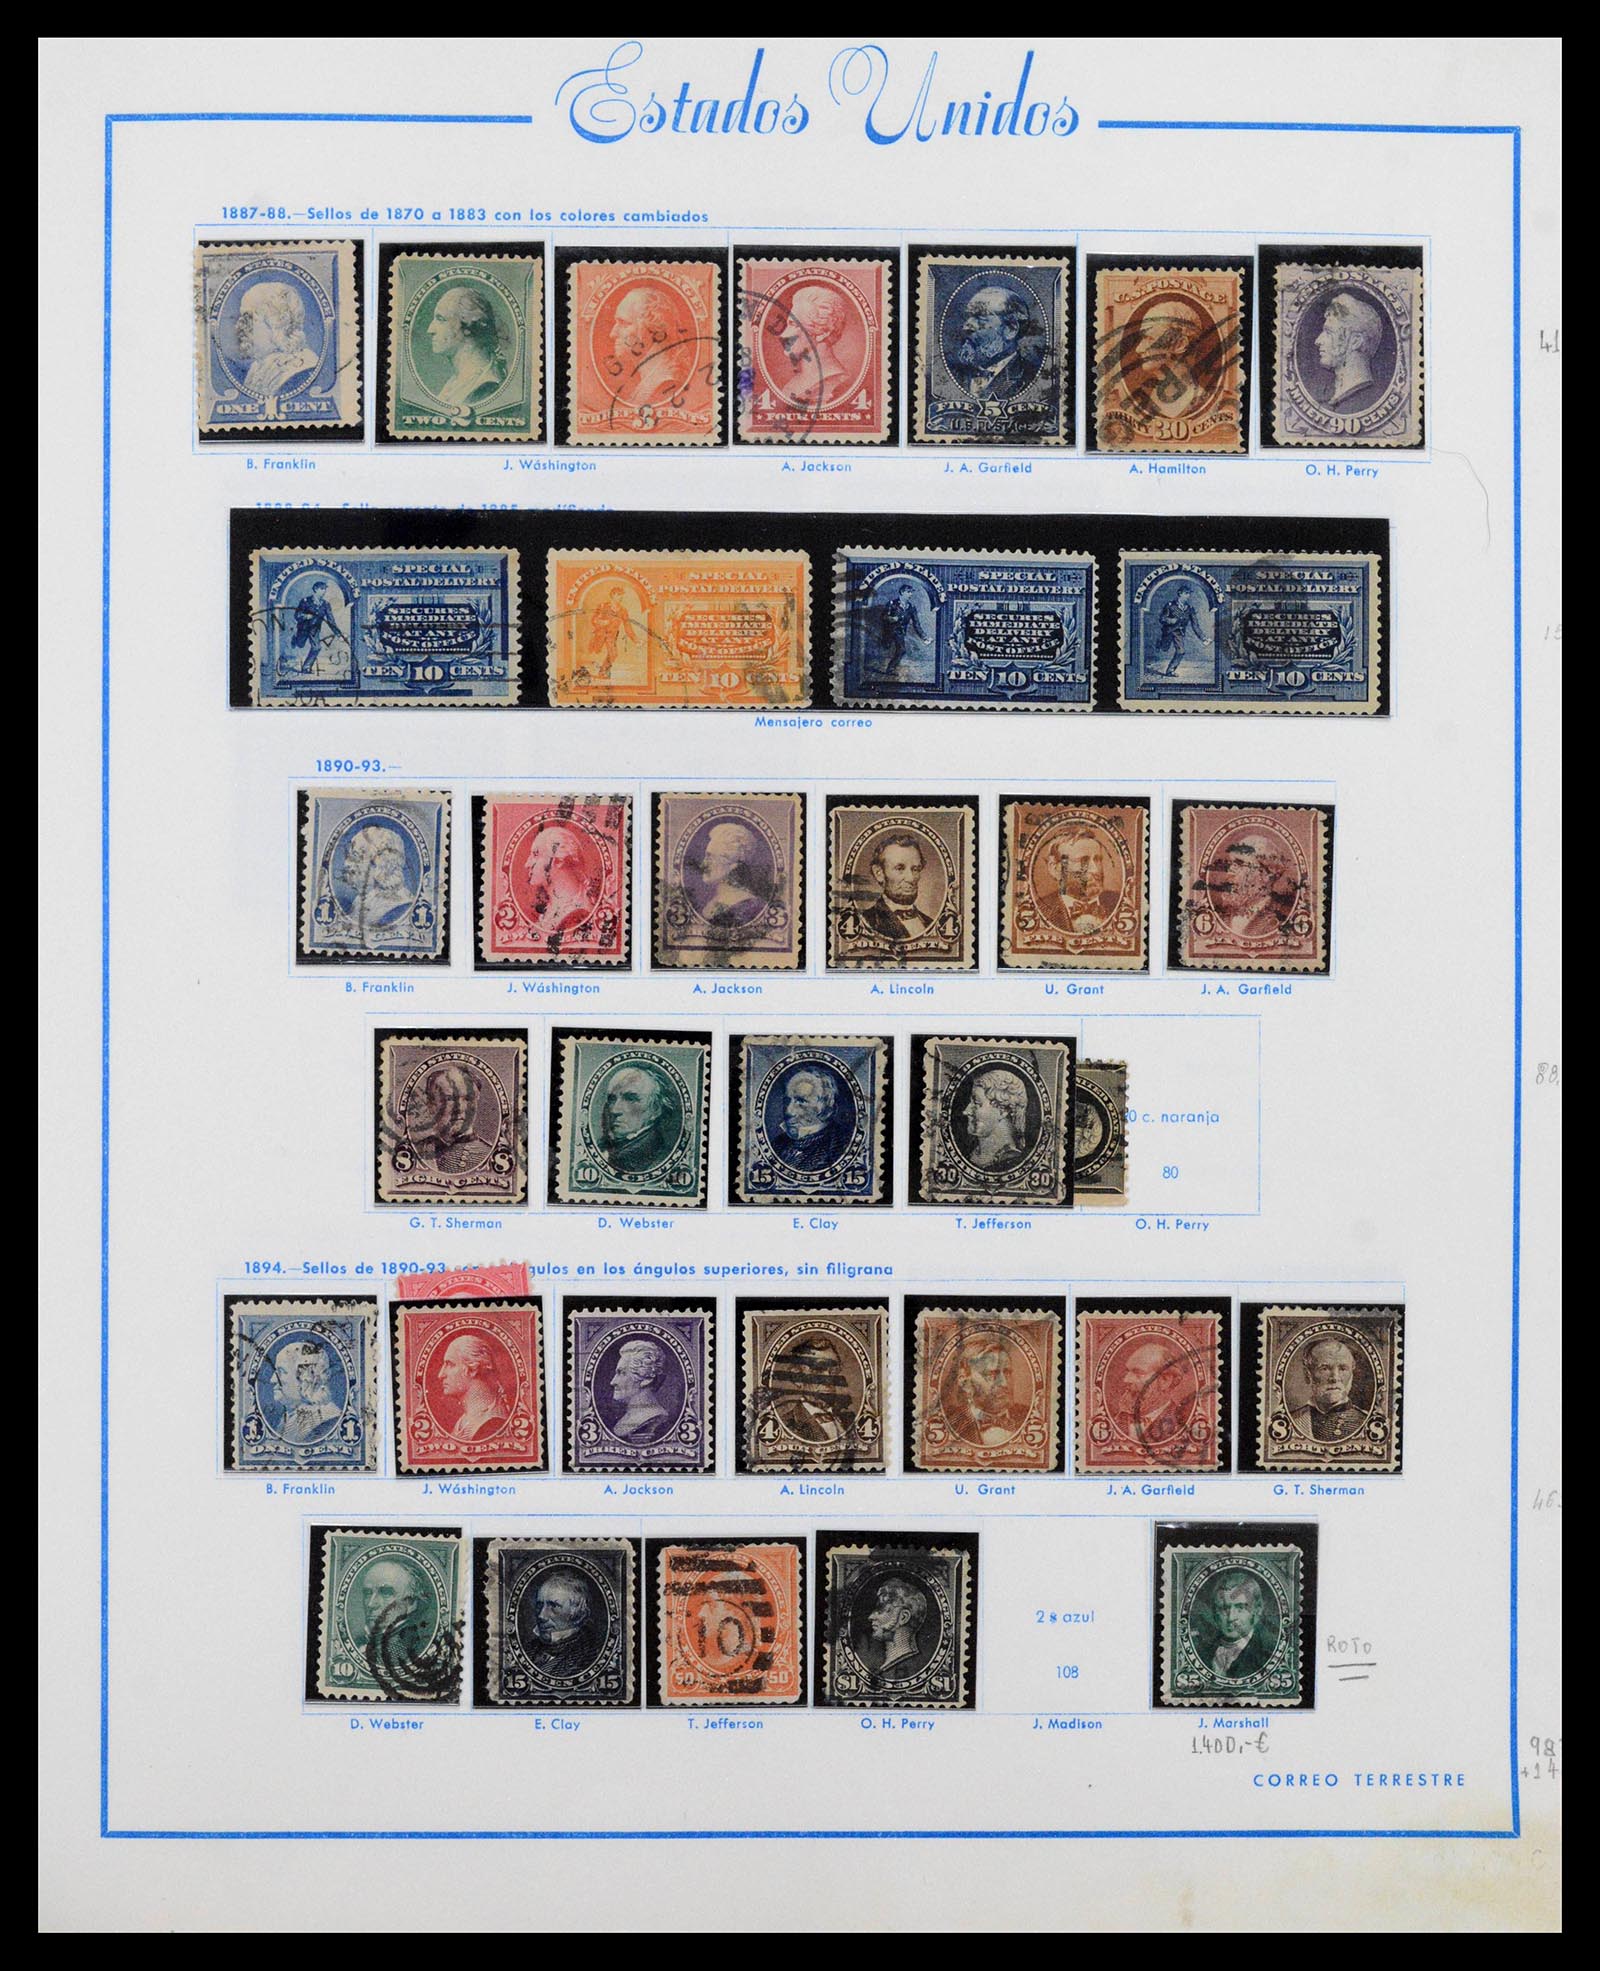 39190 0005 - Stamp collection 39190 USA 1851-1975.